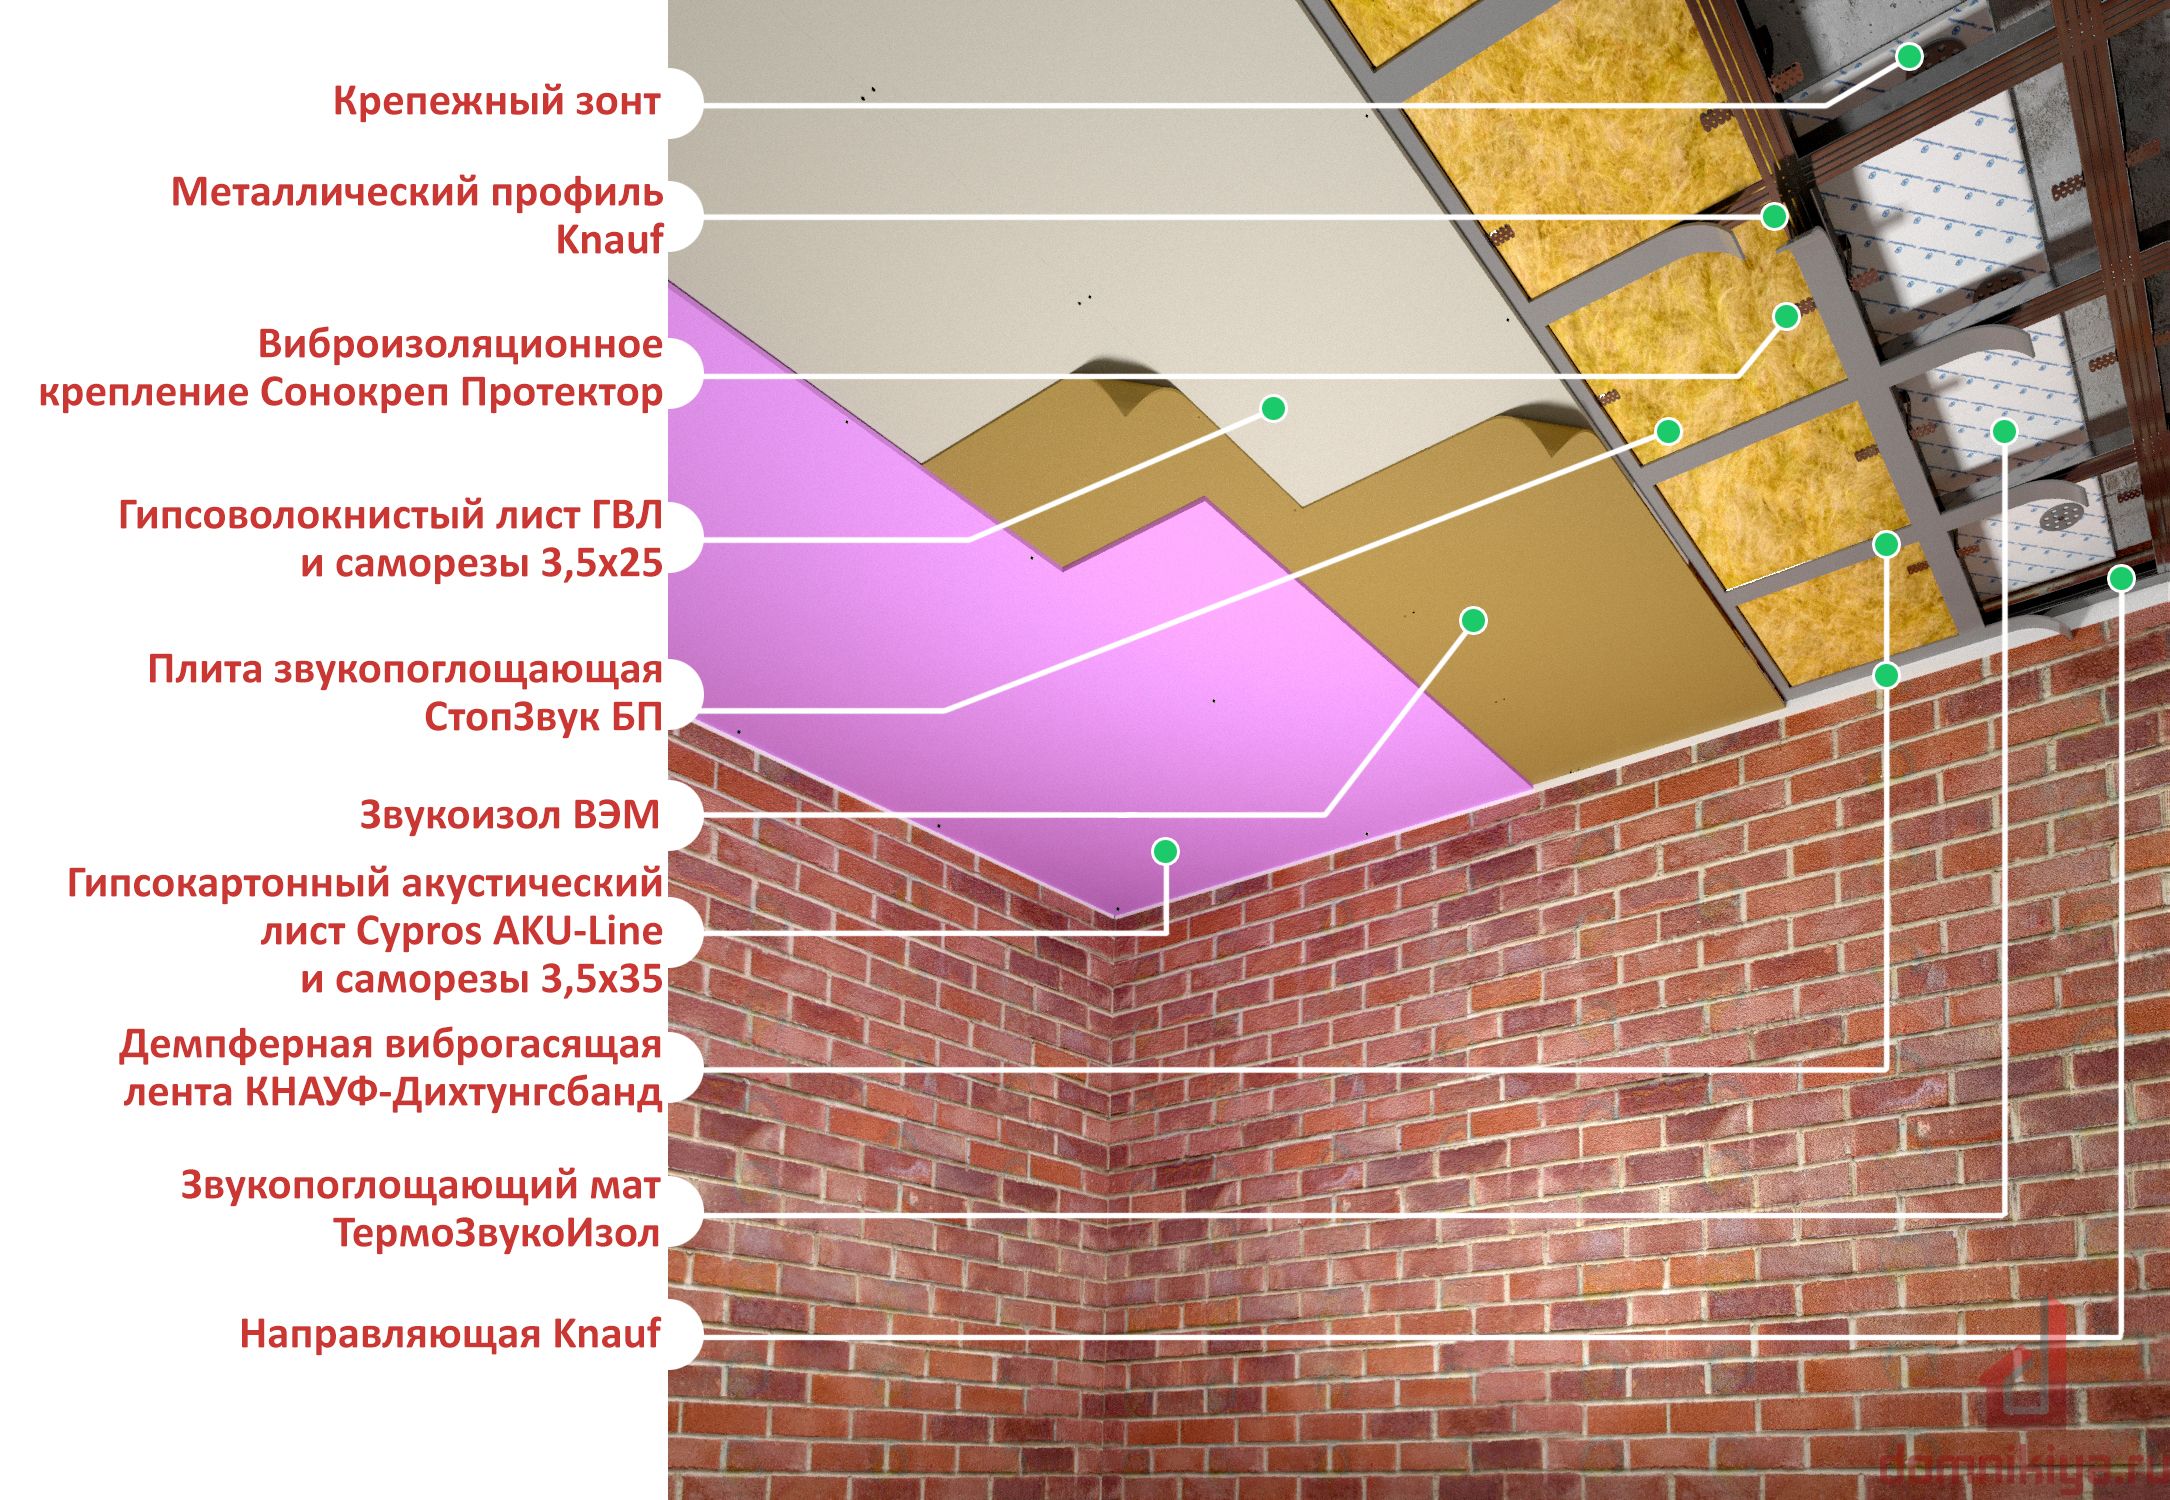 Шумоизоляция потолка в квартире под натяжной потолок: как сделать, какую выбрать | 5domov.ru - статьи о строительстве, ремонте, отделке домов и квартир